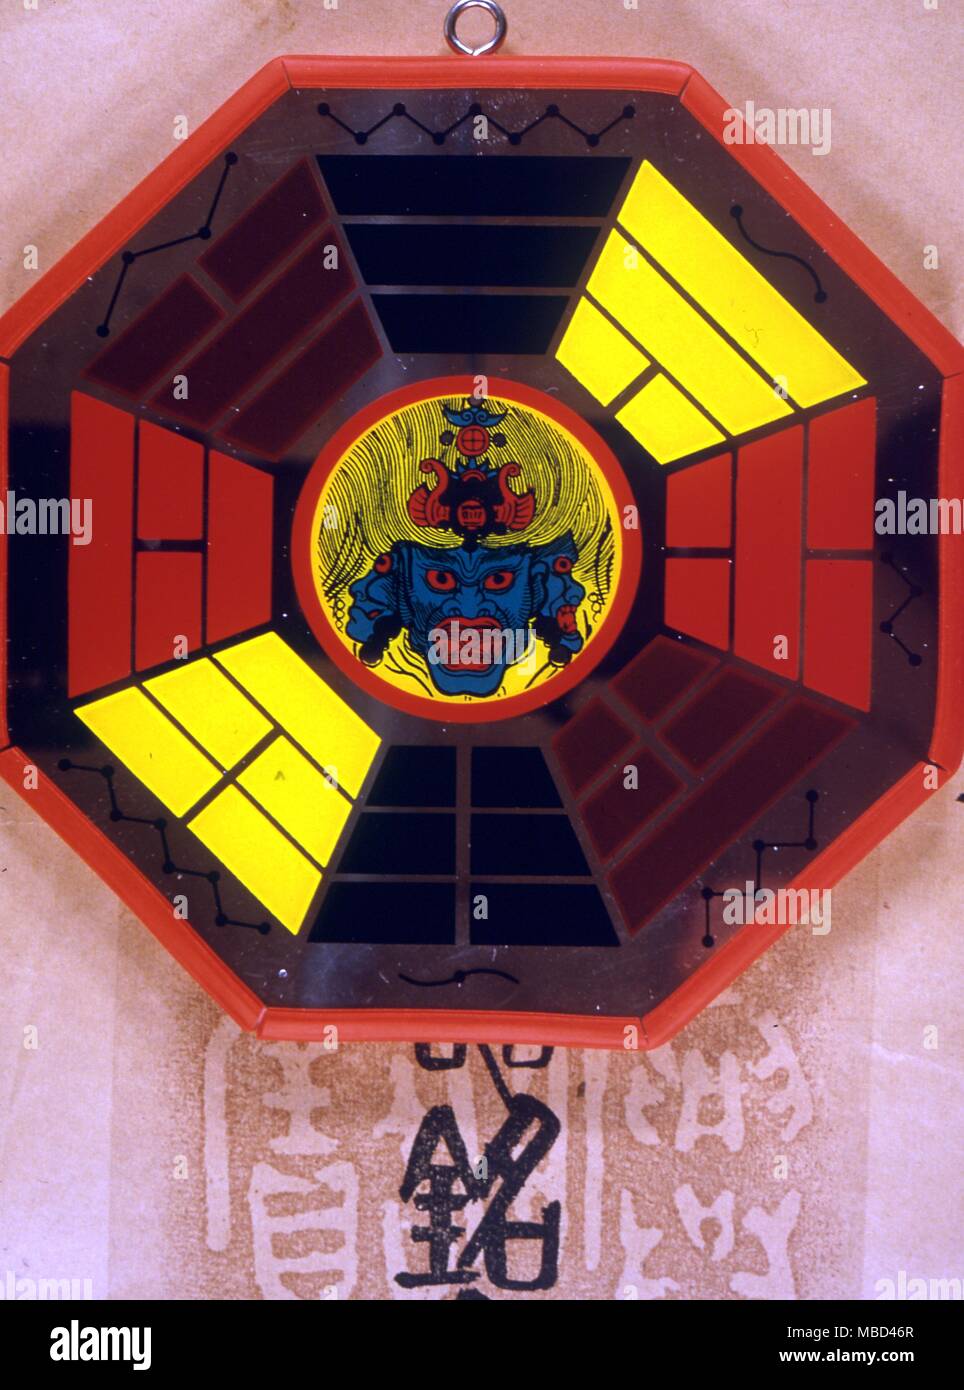 Il Feng Shui - otto trigrammi intorno a un'immagine centrale di una faccia demoniaca, destinato a deviare gli spiriti malvagi. Tali dispositivi sono generalmente appesi sulle pareti, al di sopra di porte o finestre. - ©Charles Walker / Foto Stock